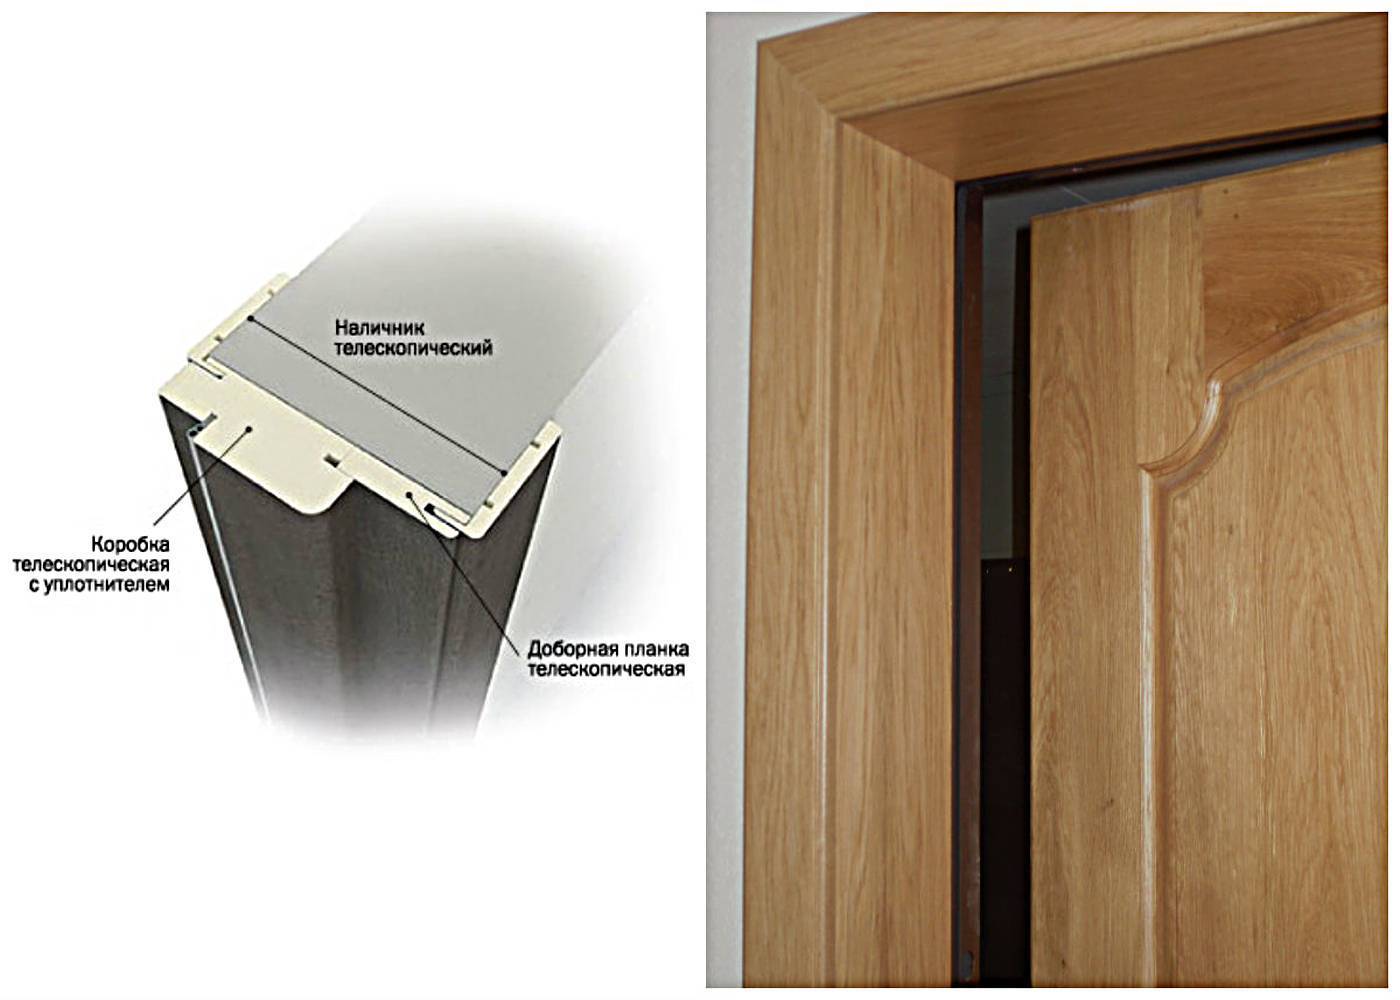 Инструкция по установке межкомнатных дверей с добором своими руками | онлайн-журнал о ремонте и дизайне